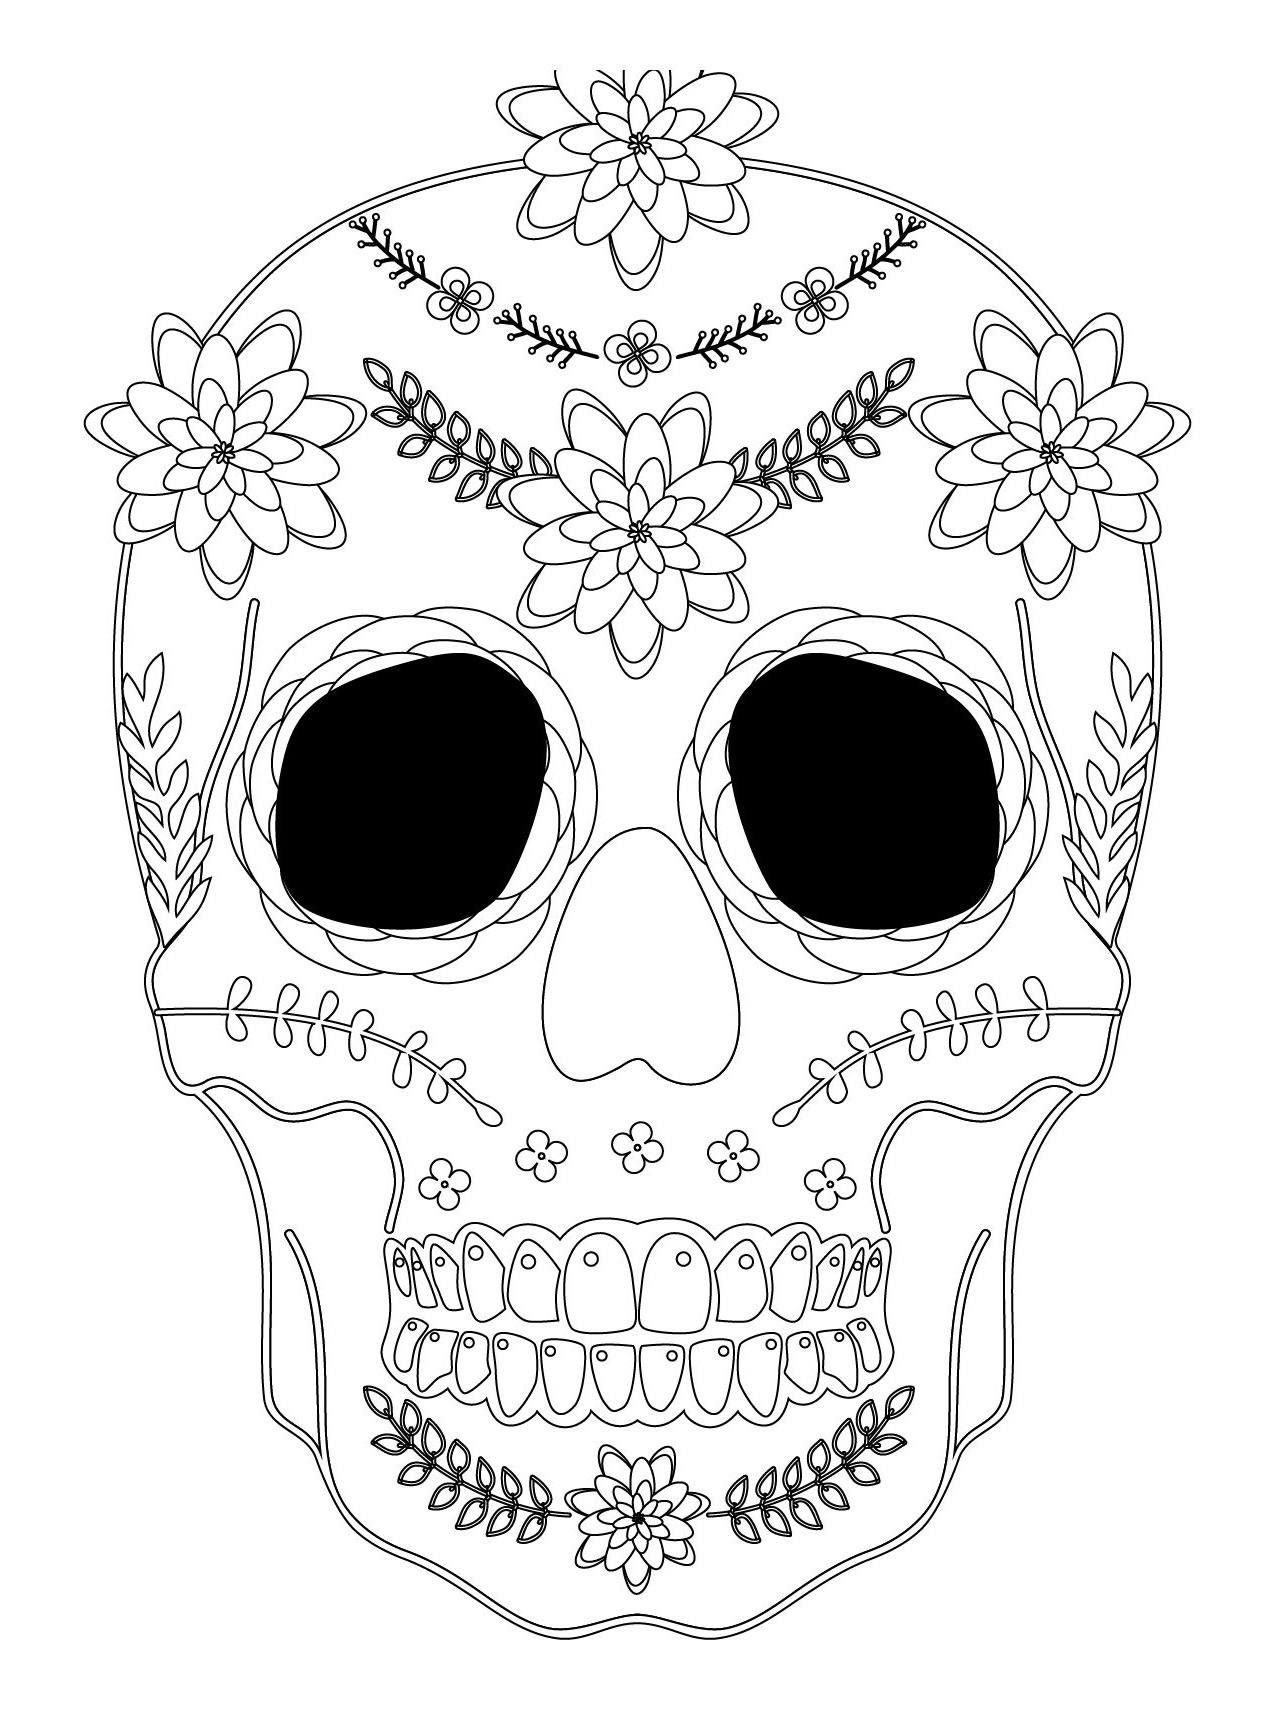 Dessin D'Halloween Qui Fait Peur Impressionnant Images Sugar Skull destiné Coloriage Qui Fait Peur